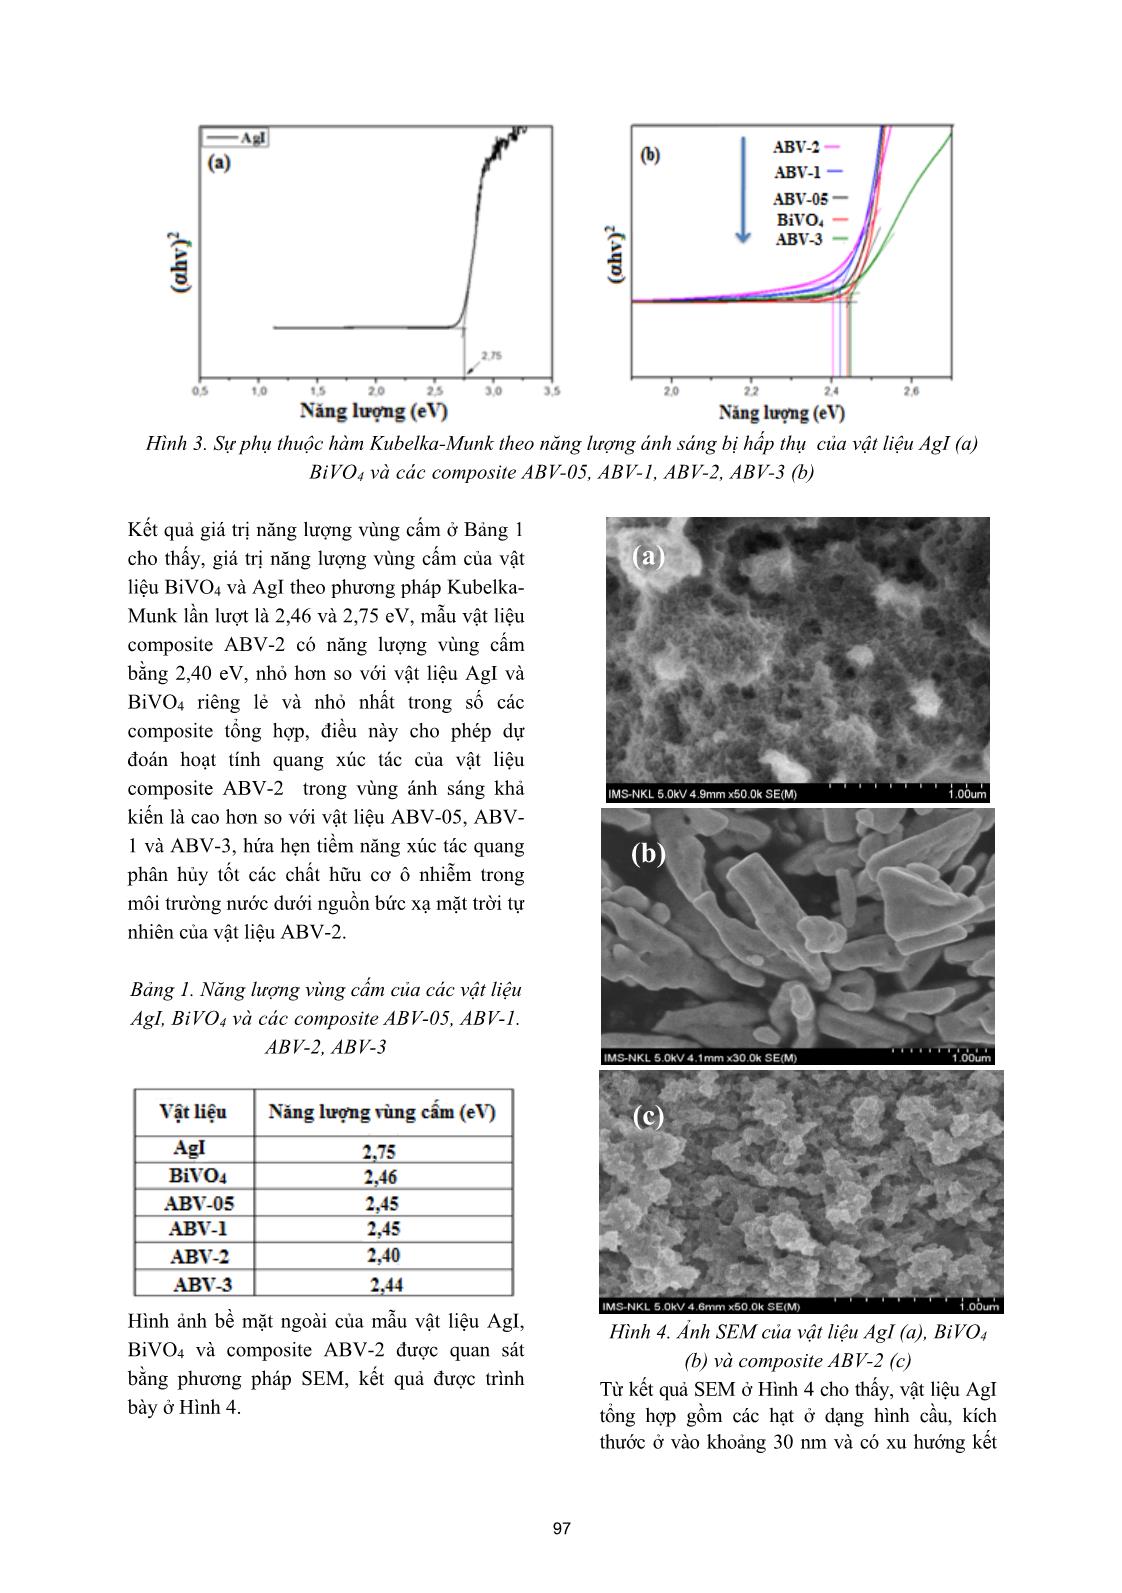 Tổng hợp vật liệu xúc tác quang composite AgI/BiVO₄ nhằm ứng dụng phân hủy các chất hữu cơ ô nhiễm trang 4